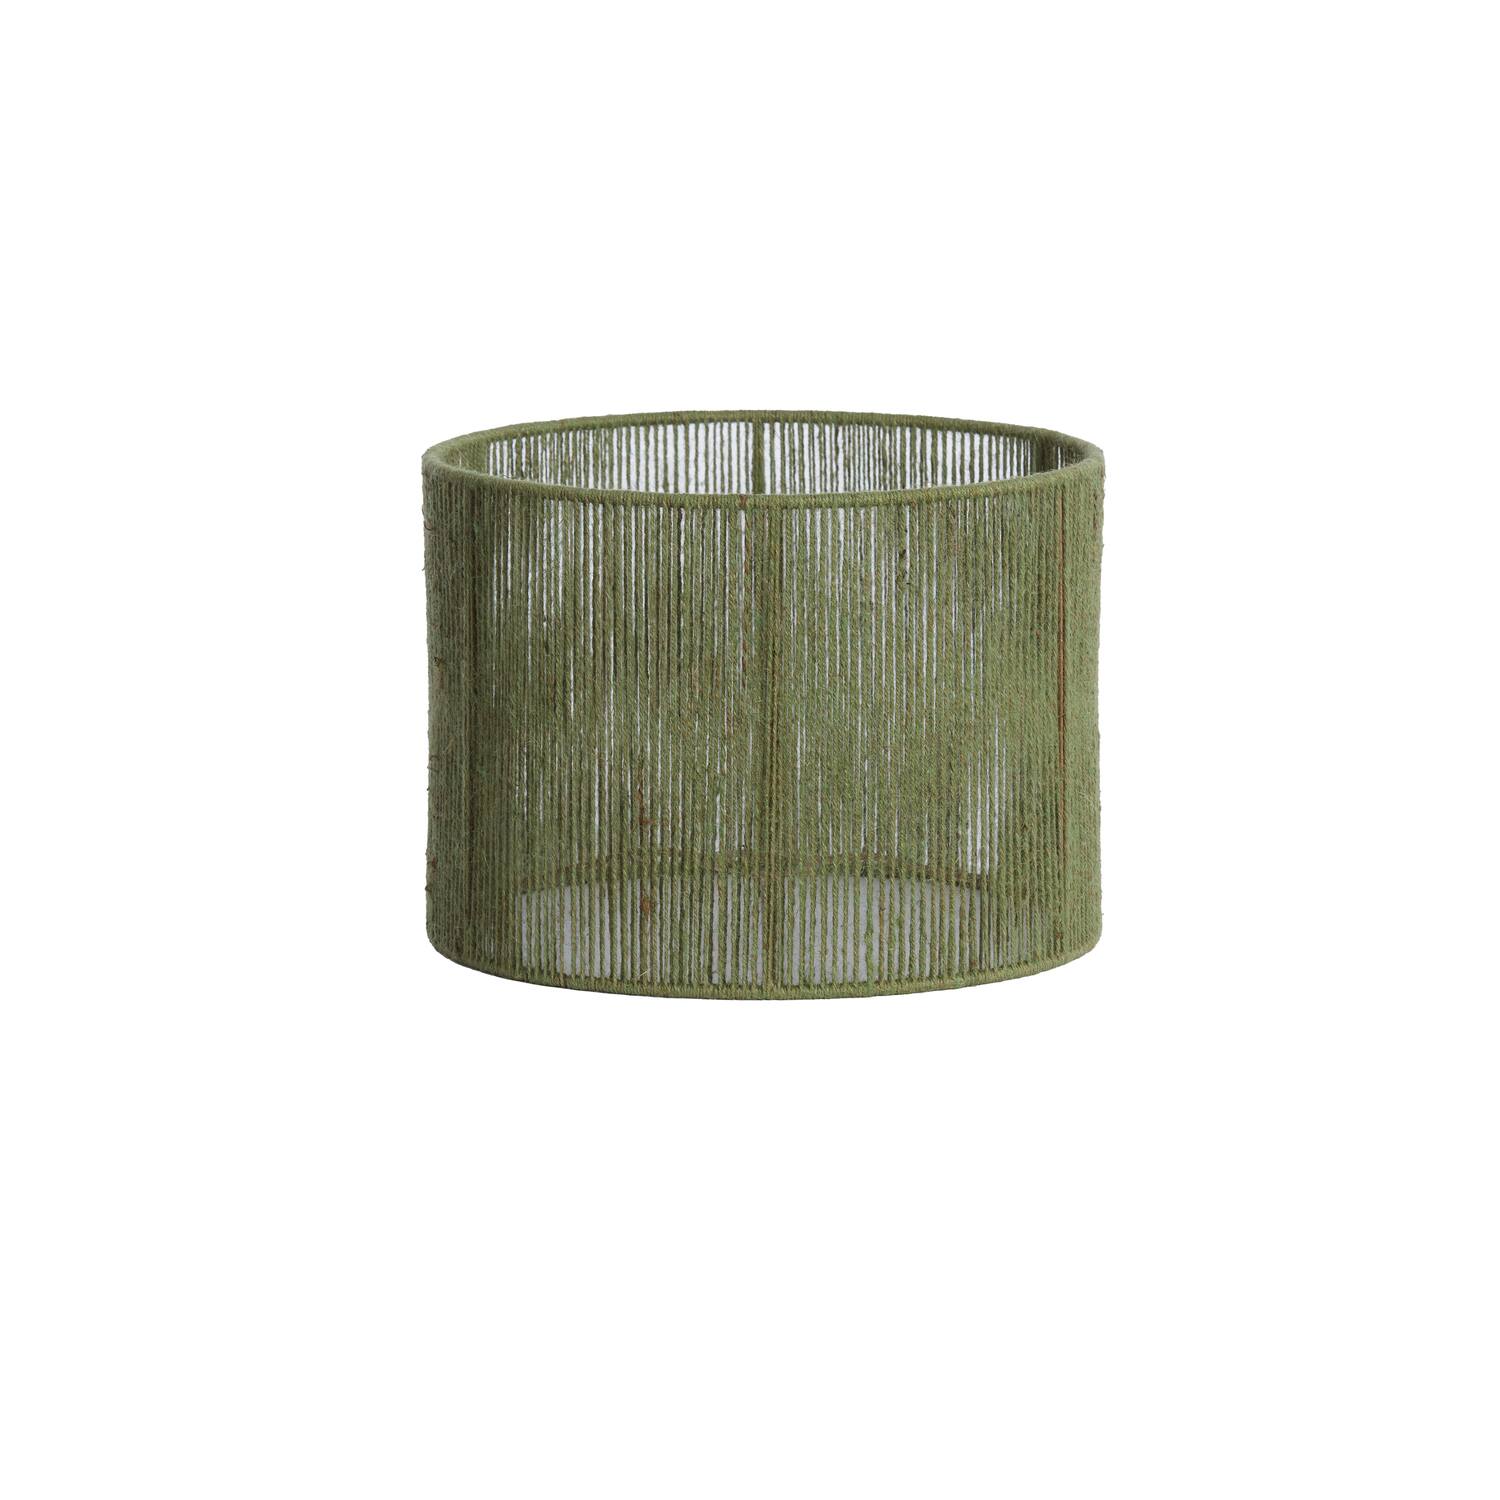 Shade cylinder 30-30-21 cm TOSSA jute green